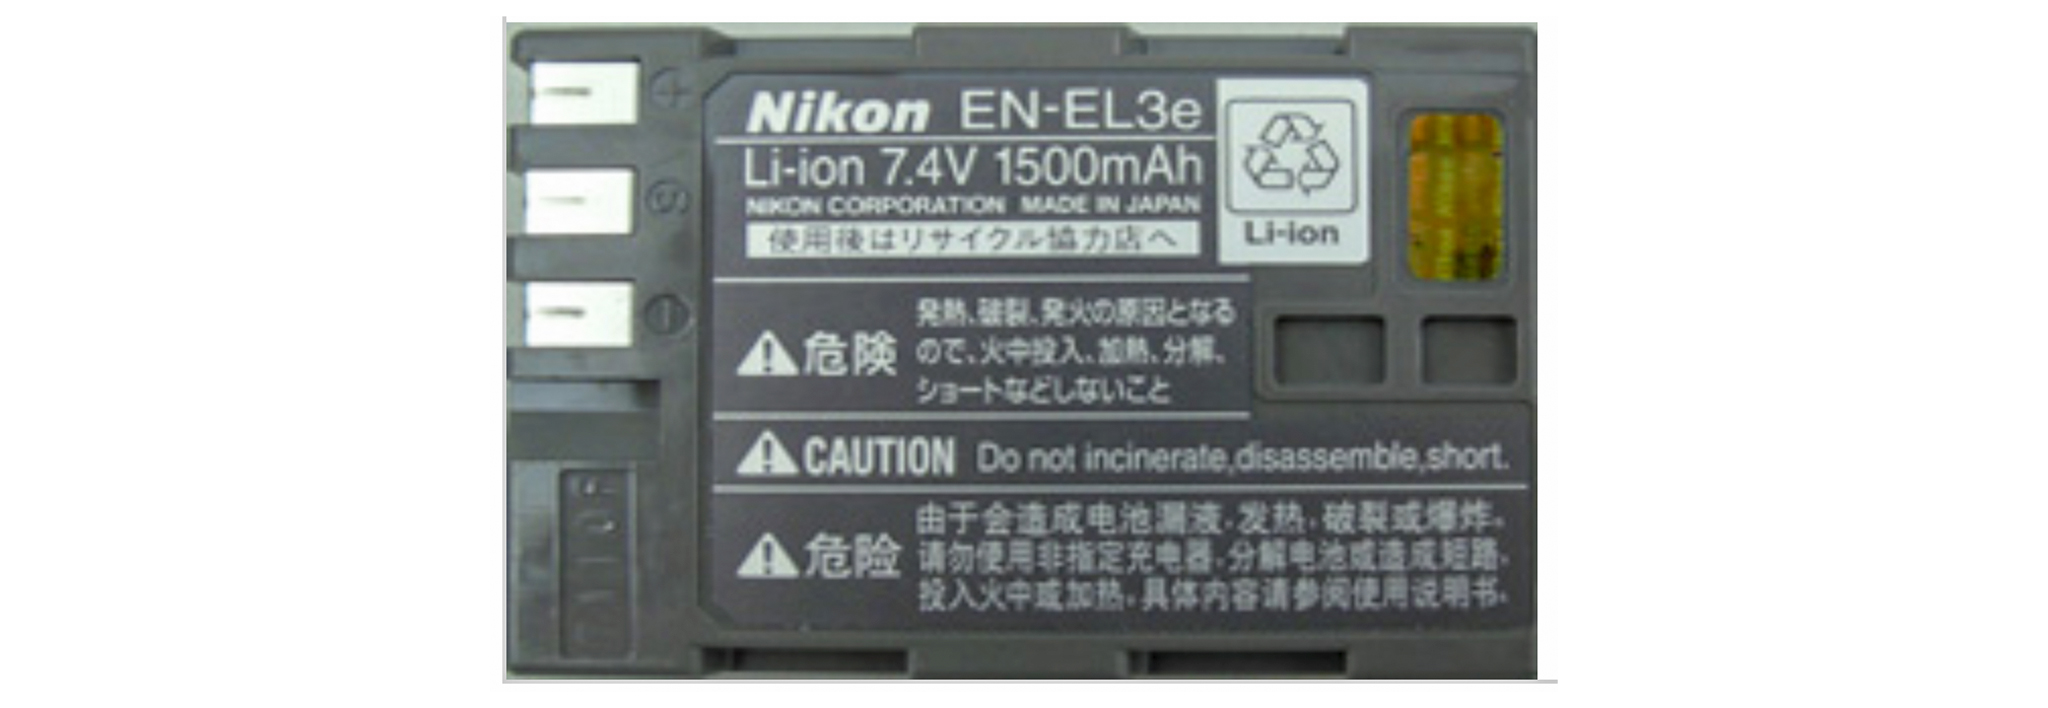 Nikon-EN-EL3e-7.jpg